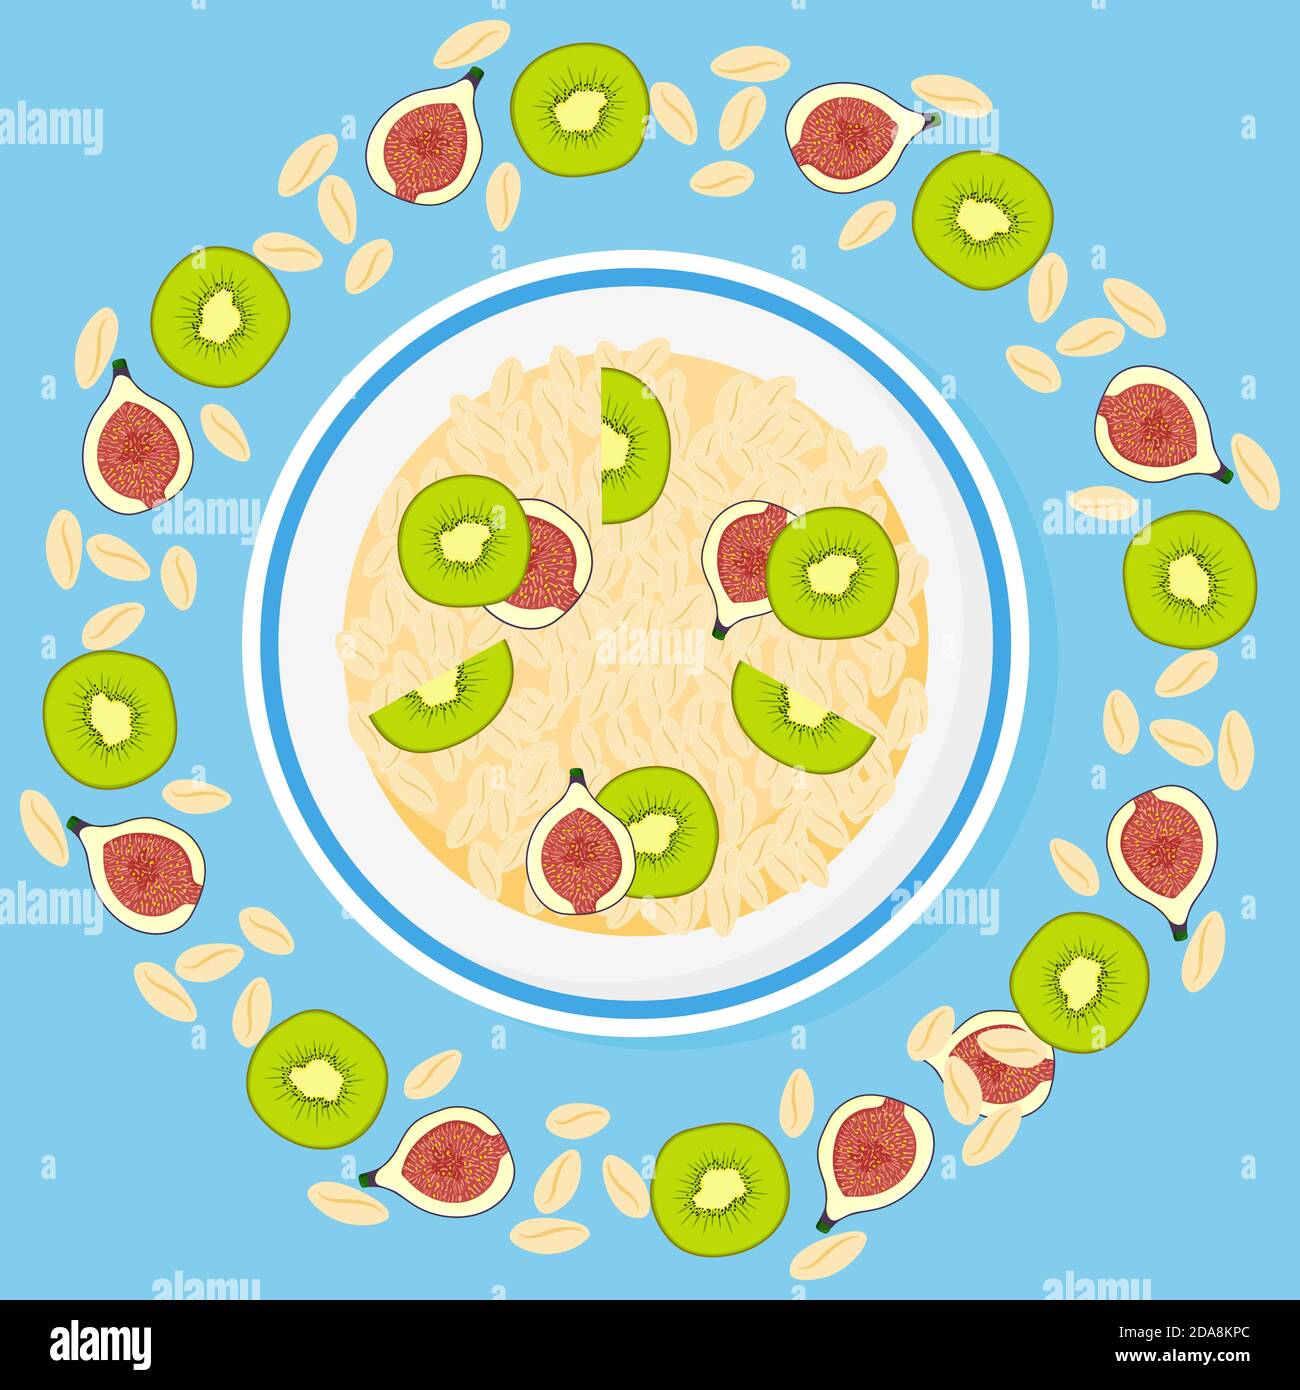 Granola, Feige, Kiwi in Schale auf blauem Hintergrund. Müsli Früchte gesund natürliches Frühstück. Gesunde Ernährung, Haferflocken, Vektor-Cartoon-Illustration. Stock Vektor